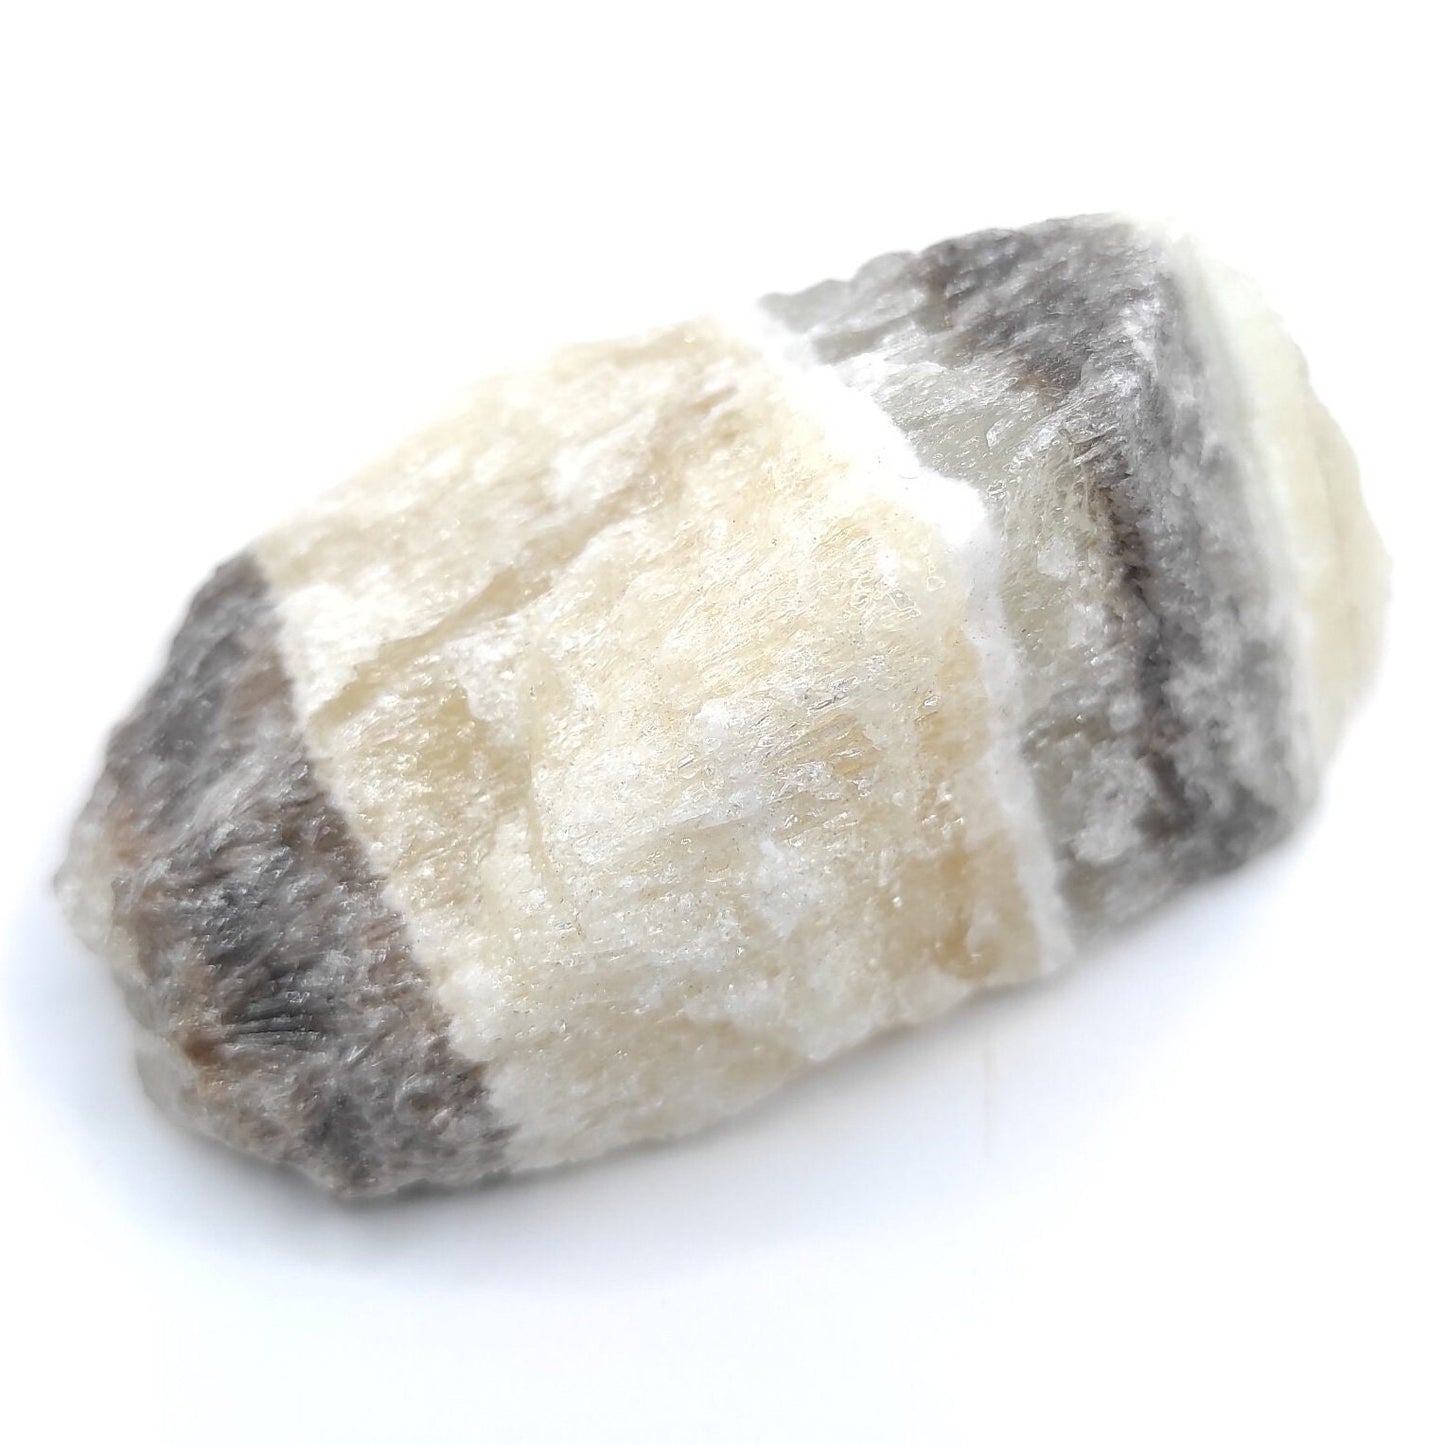 92g Zebra Calcite - Patterned Calcite Crystal - Chihuahua, Mexico - Natural Calcite - Calcite Stone - Raw Calcite Piece - Rough Calcite